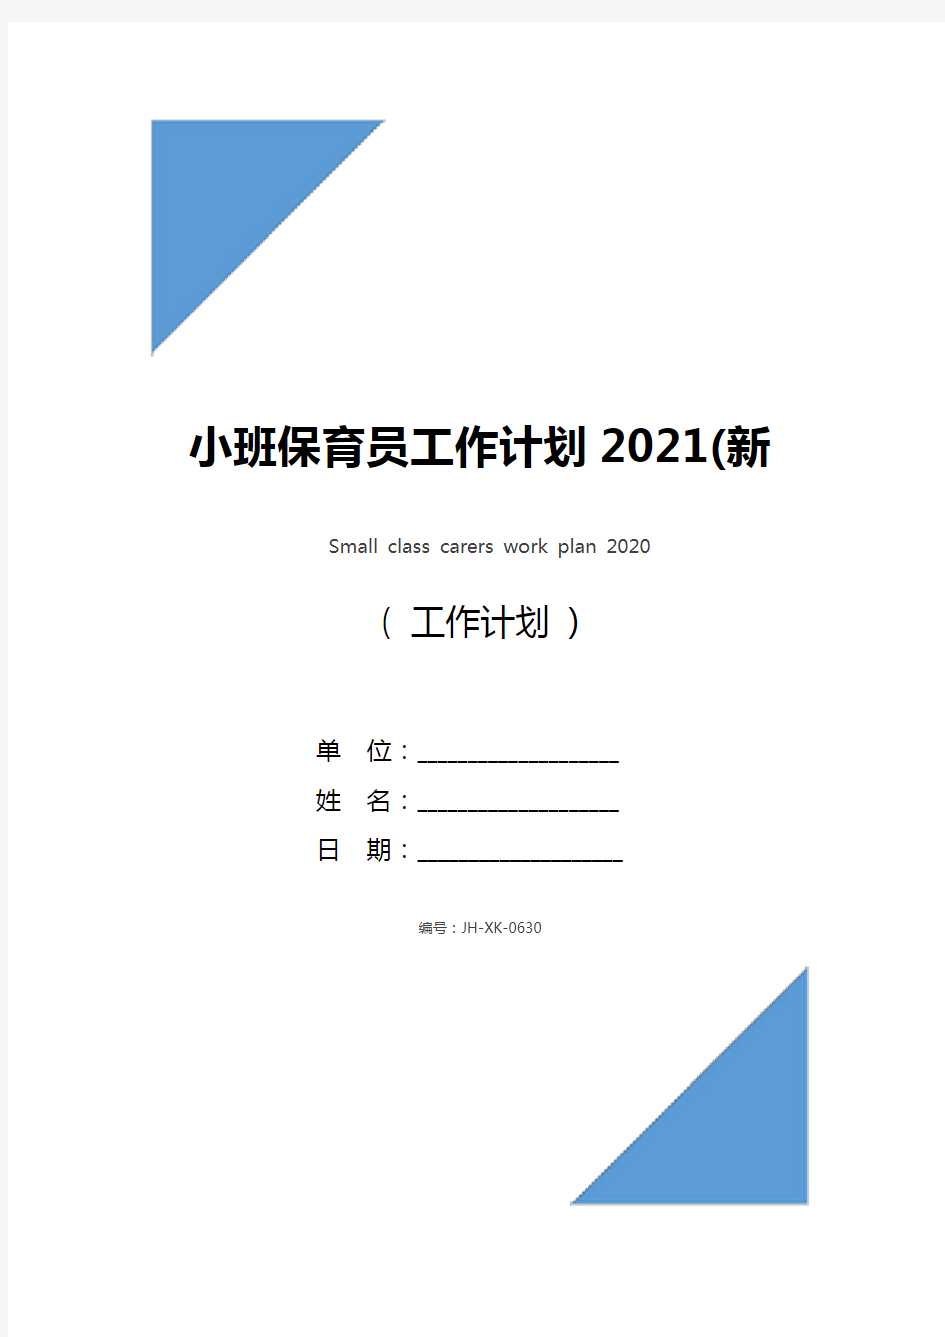 小班保育员工作计划2021(新版)